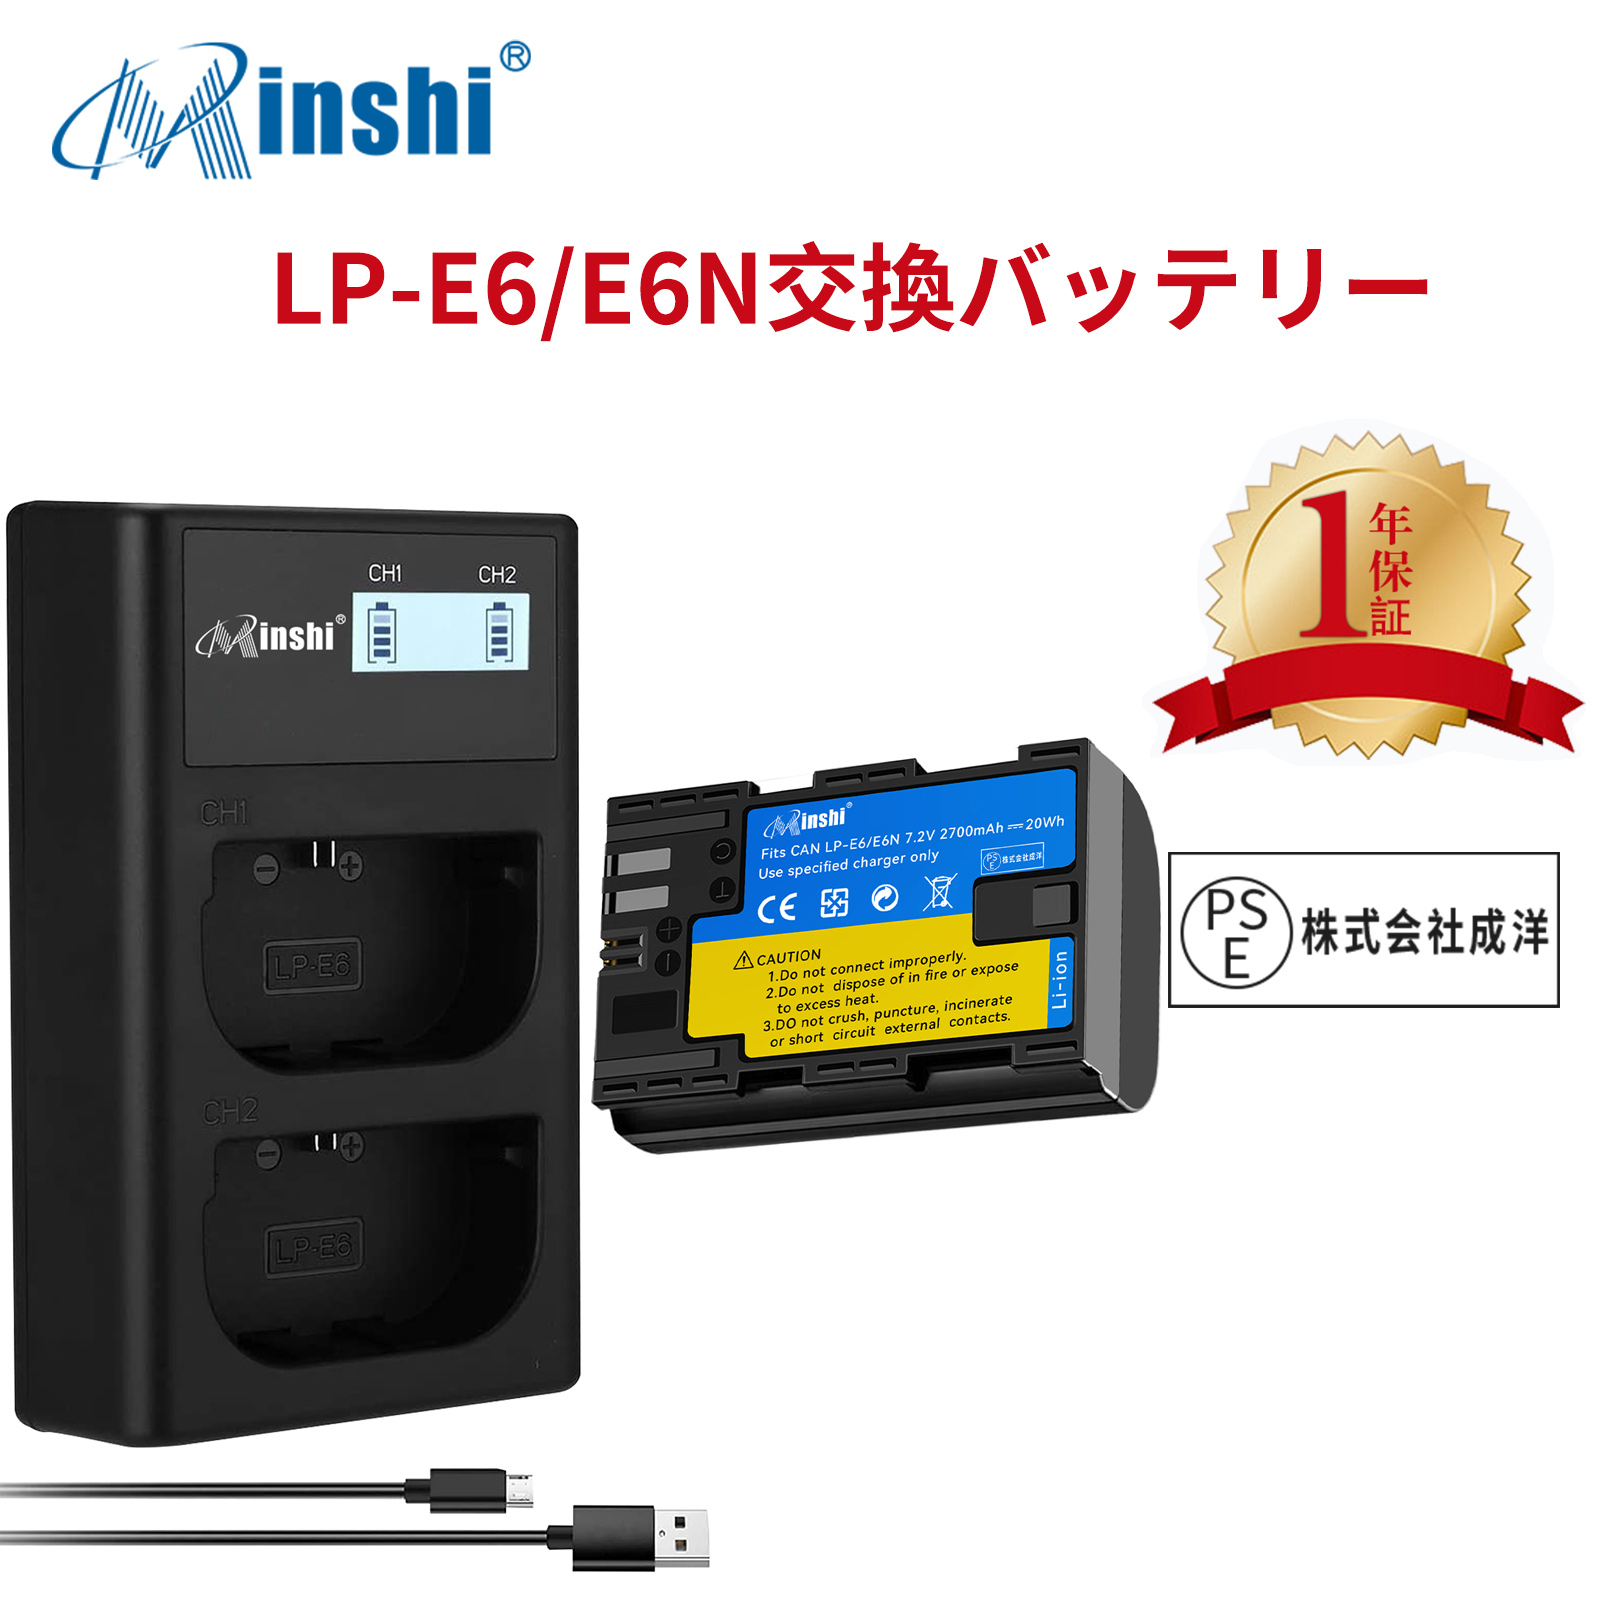 【1年保証】minshi Canon EOS 6D LP-E6  LP-E6N EOS6D CANON 80D 【2700mAh 7.2V 】【互換急速USBチャージャー】高品質 LP-E6NH 交換用バッテリー